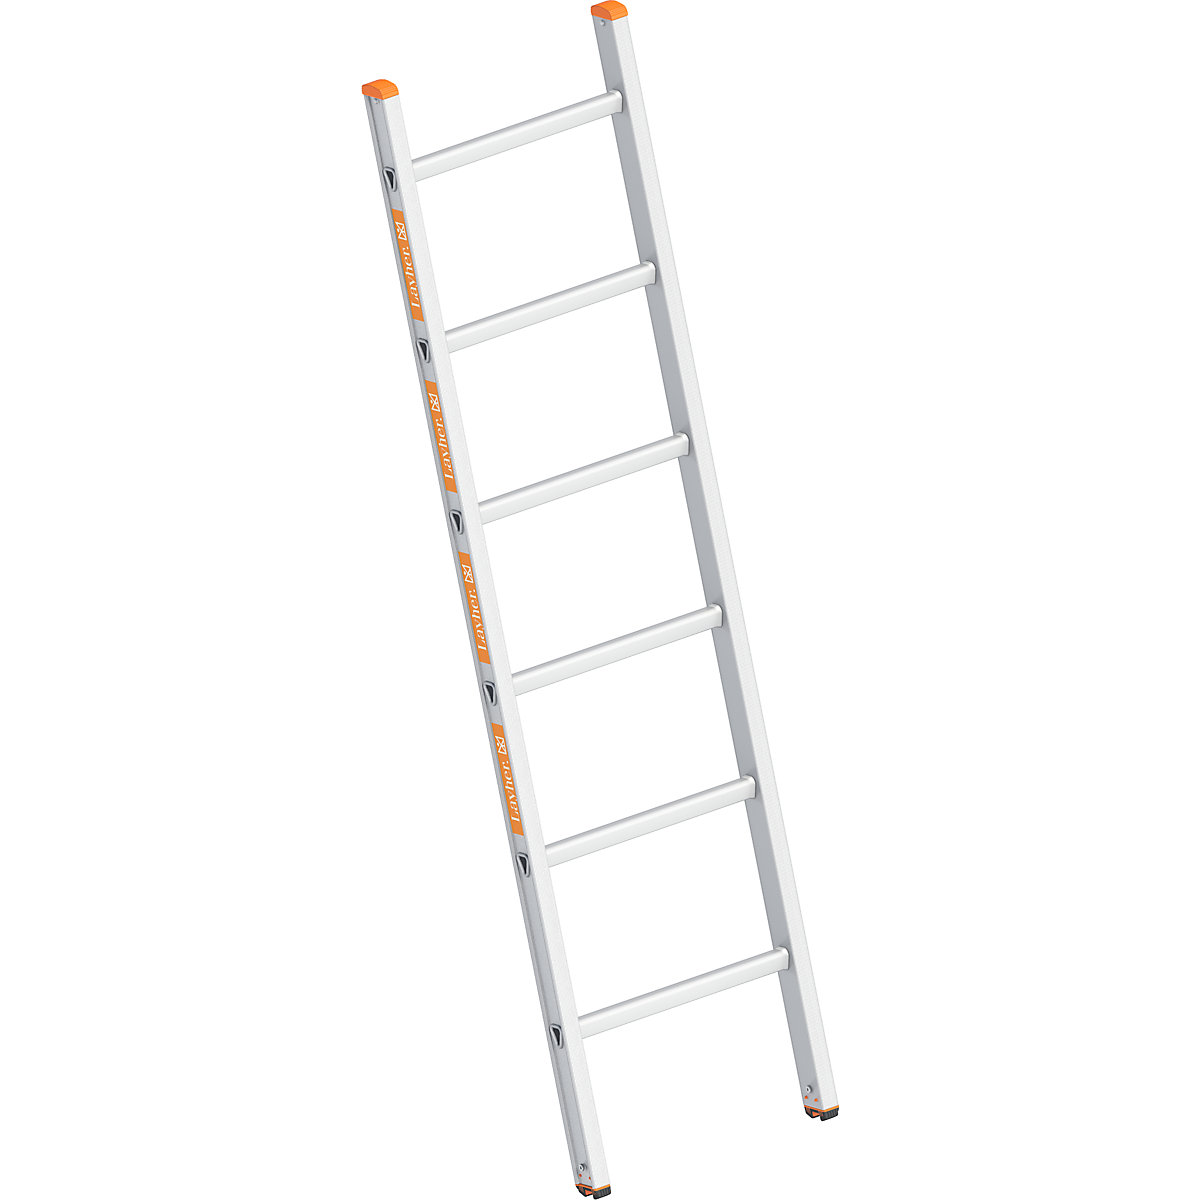 Escabeau-escalier – Layher: avec mise à niveau, accès des deux côtés